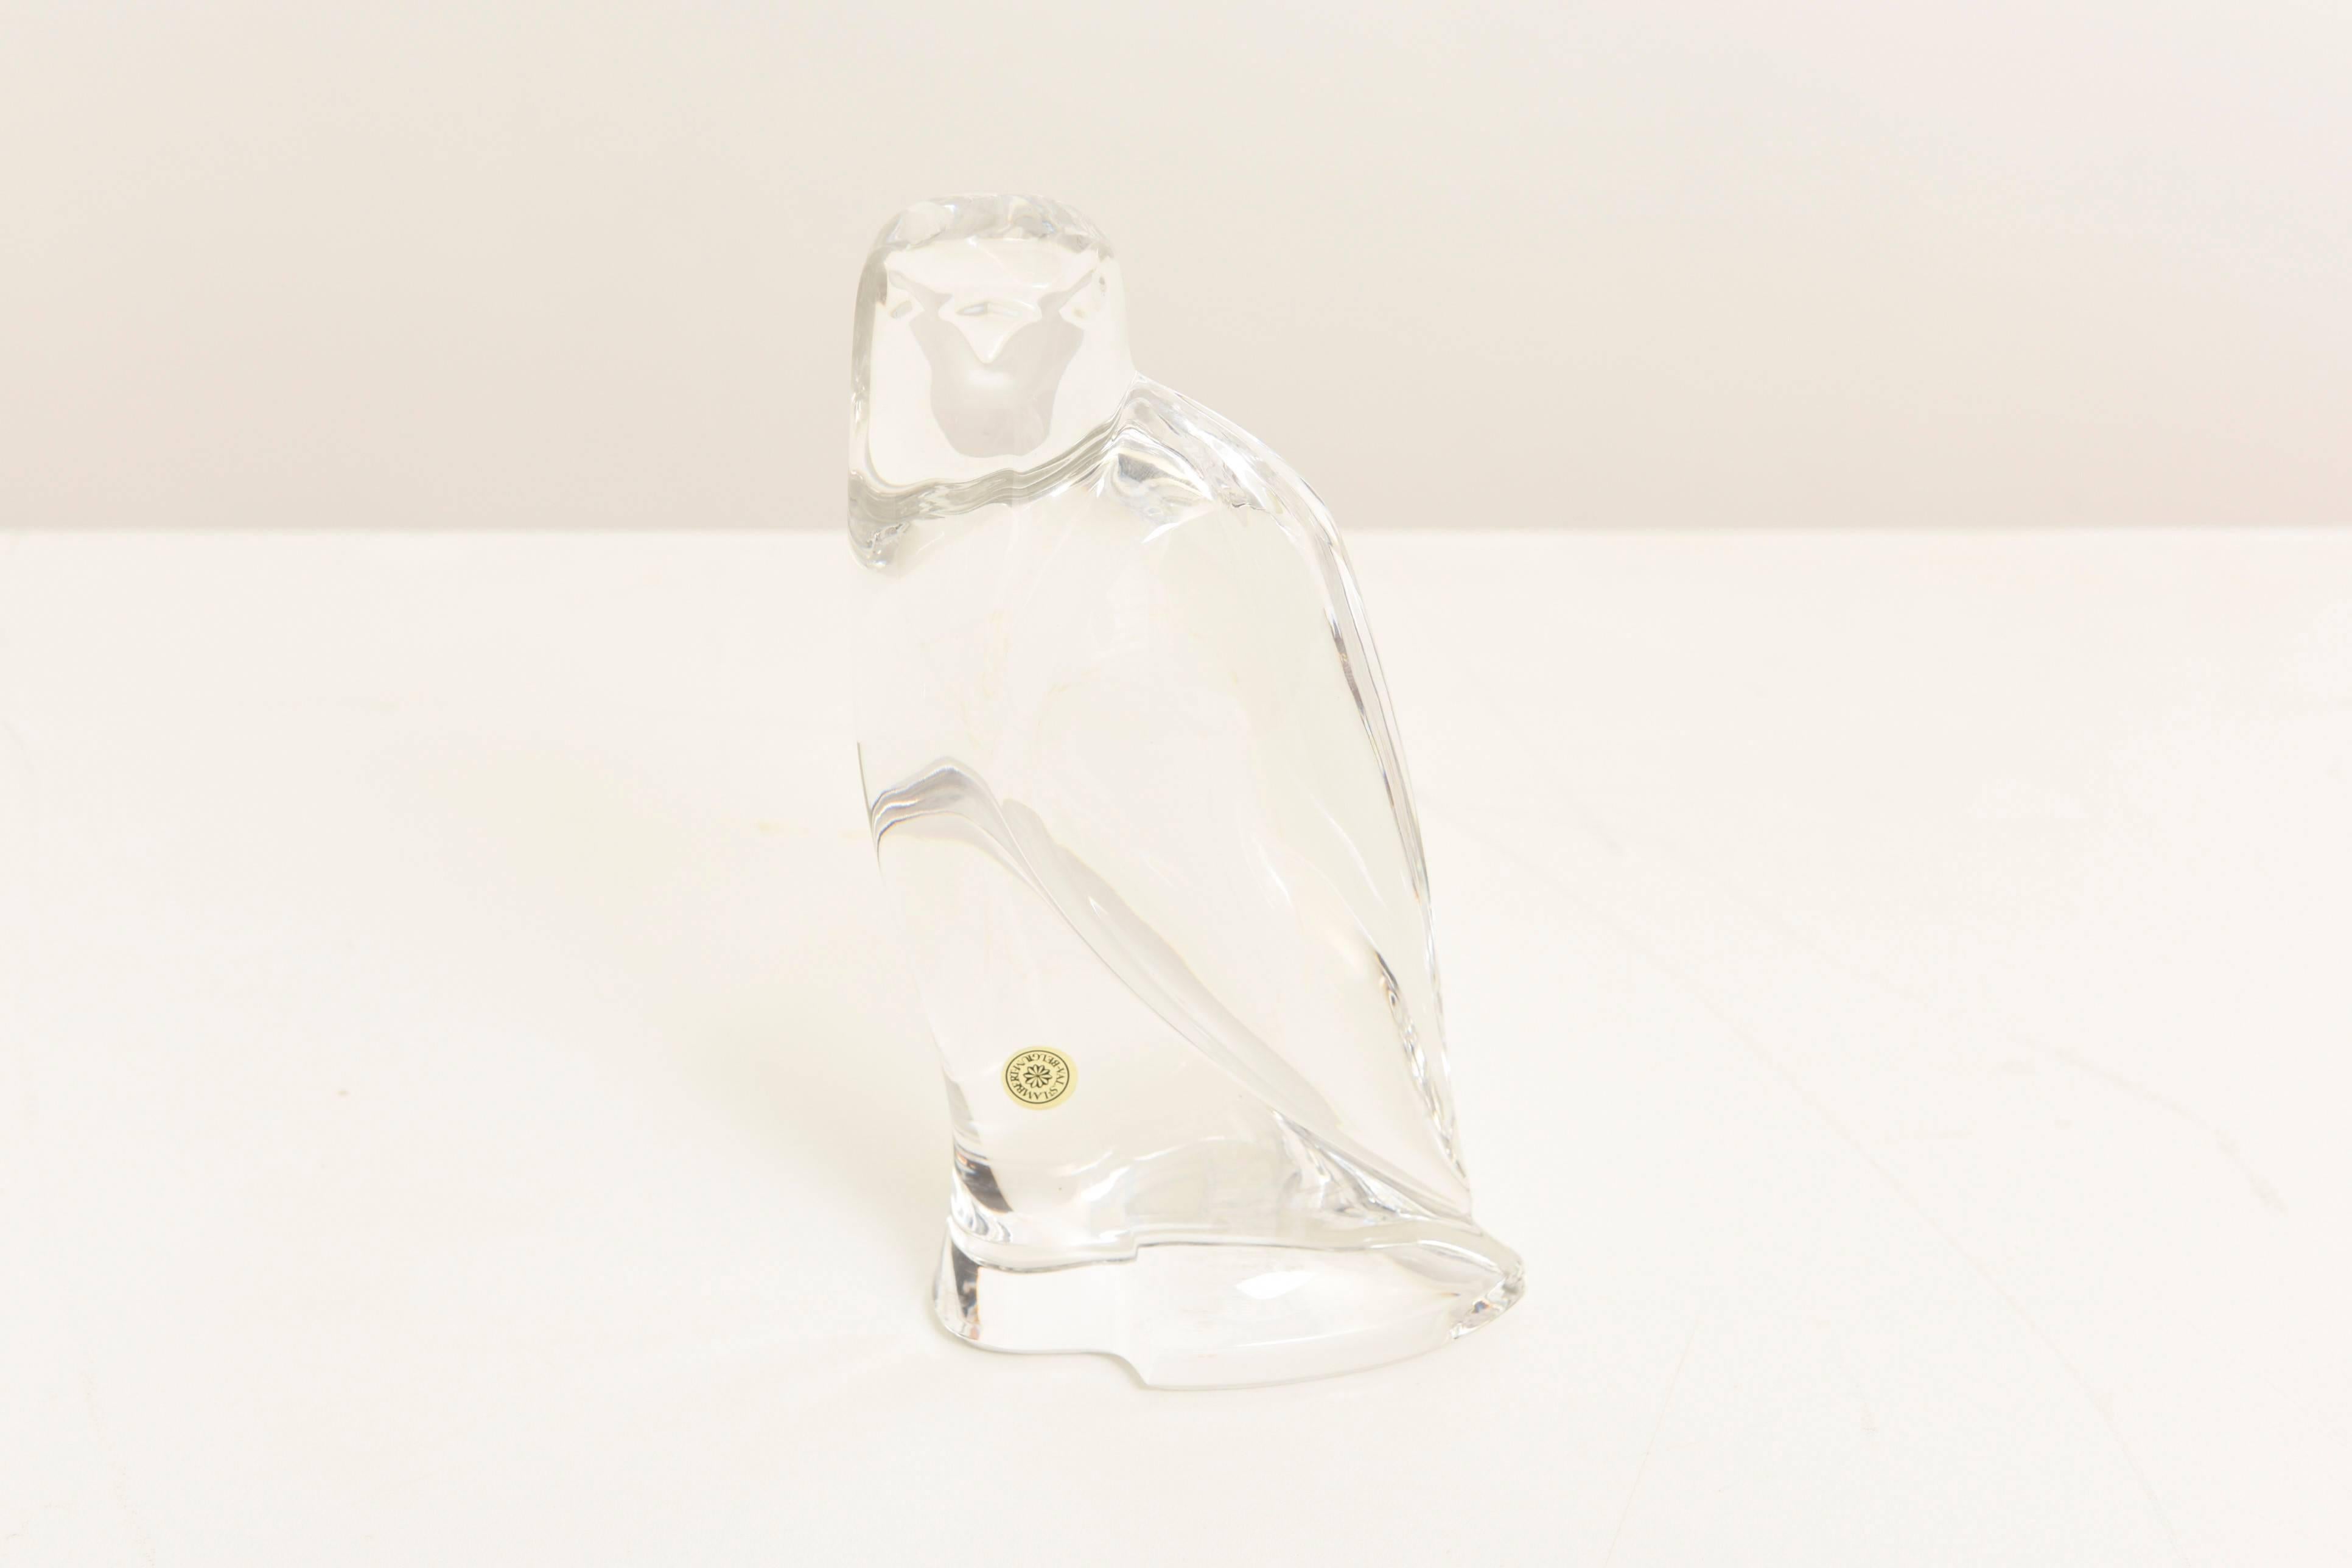 Très belle sculpture d'un faucon en cristal conçue par Val St Lamber.

Soufflé à la bouche dans un moule et fini à la main, intensité lumineuse très élevée.
Labellisé avec l'ancien cachet de Val St Lamber. 

Un superbe animal stylisé pour la